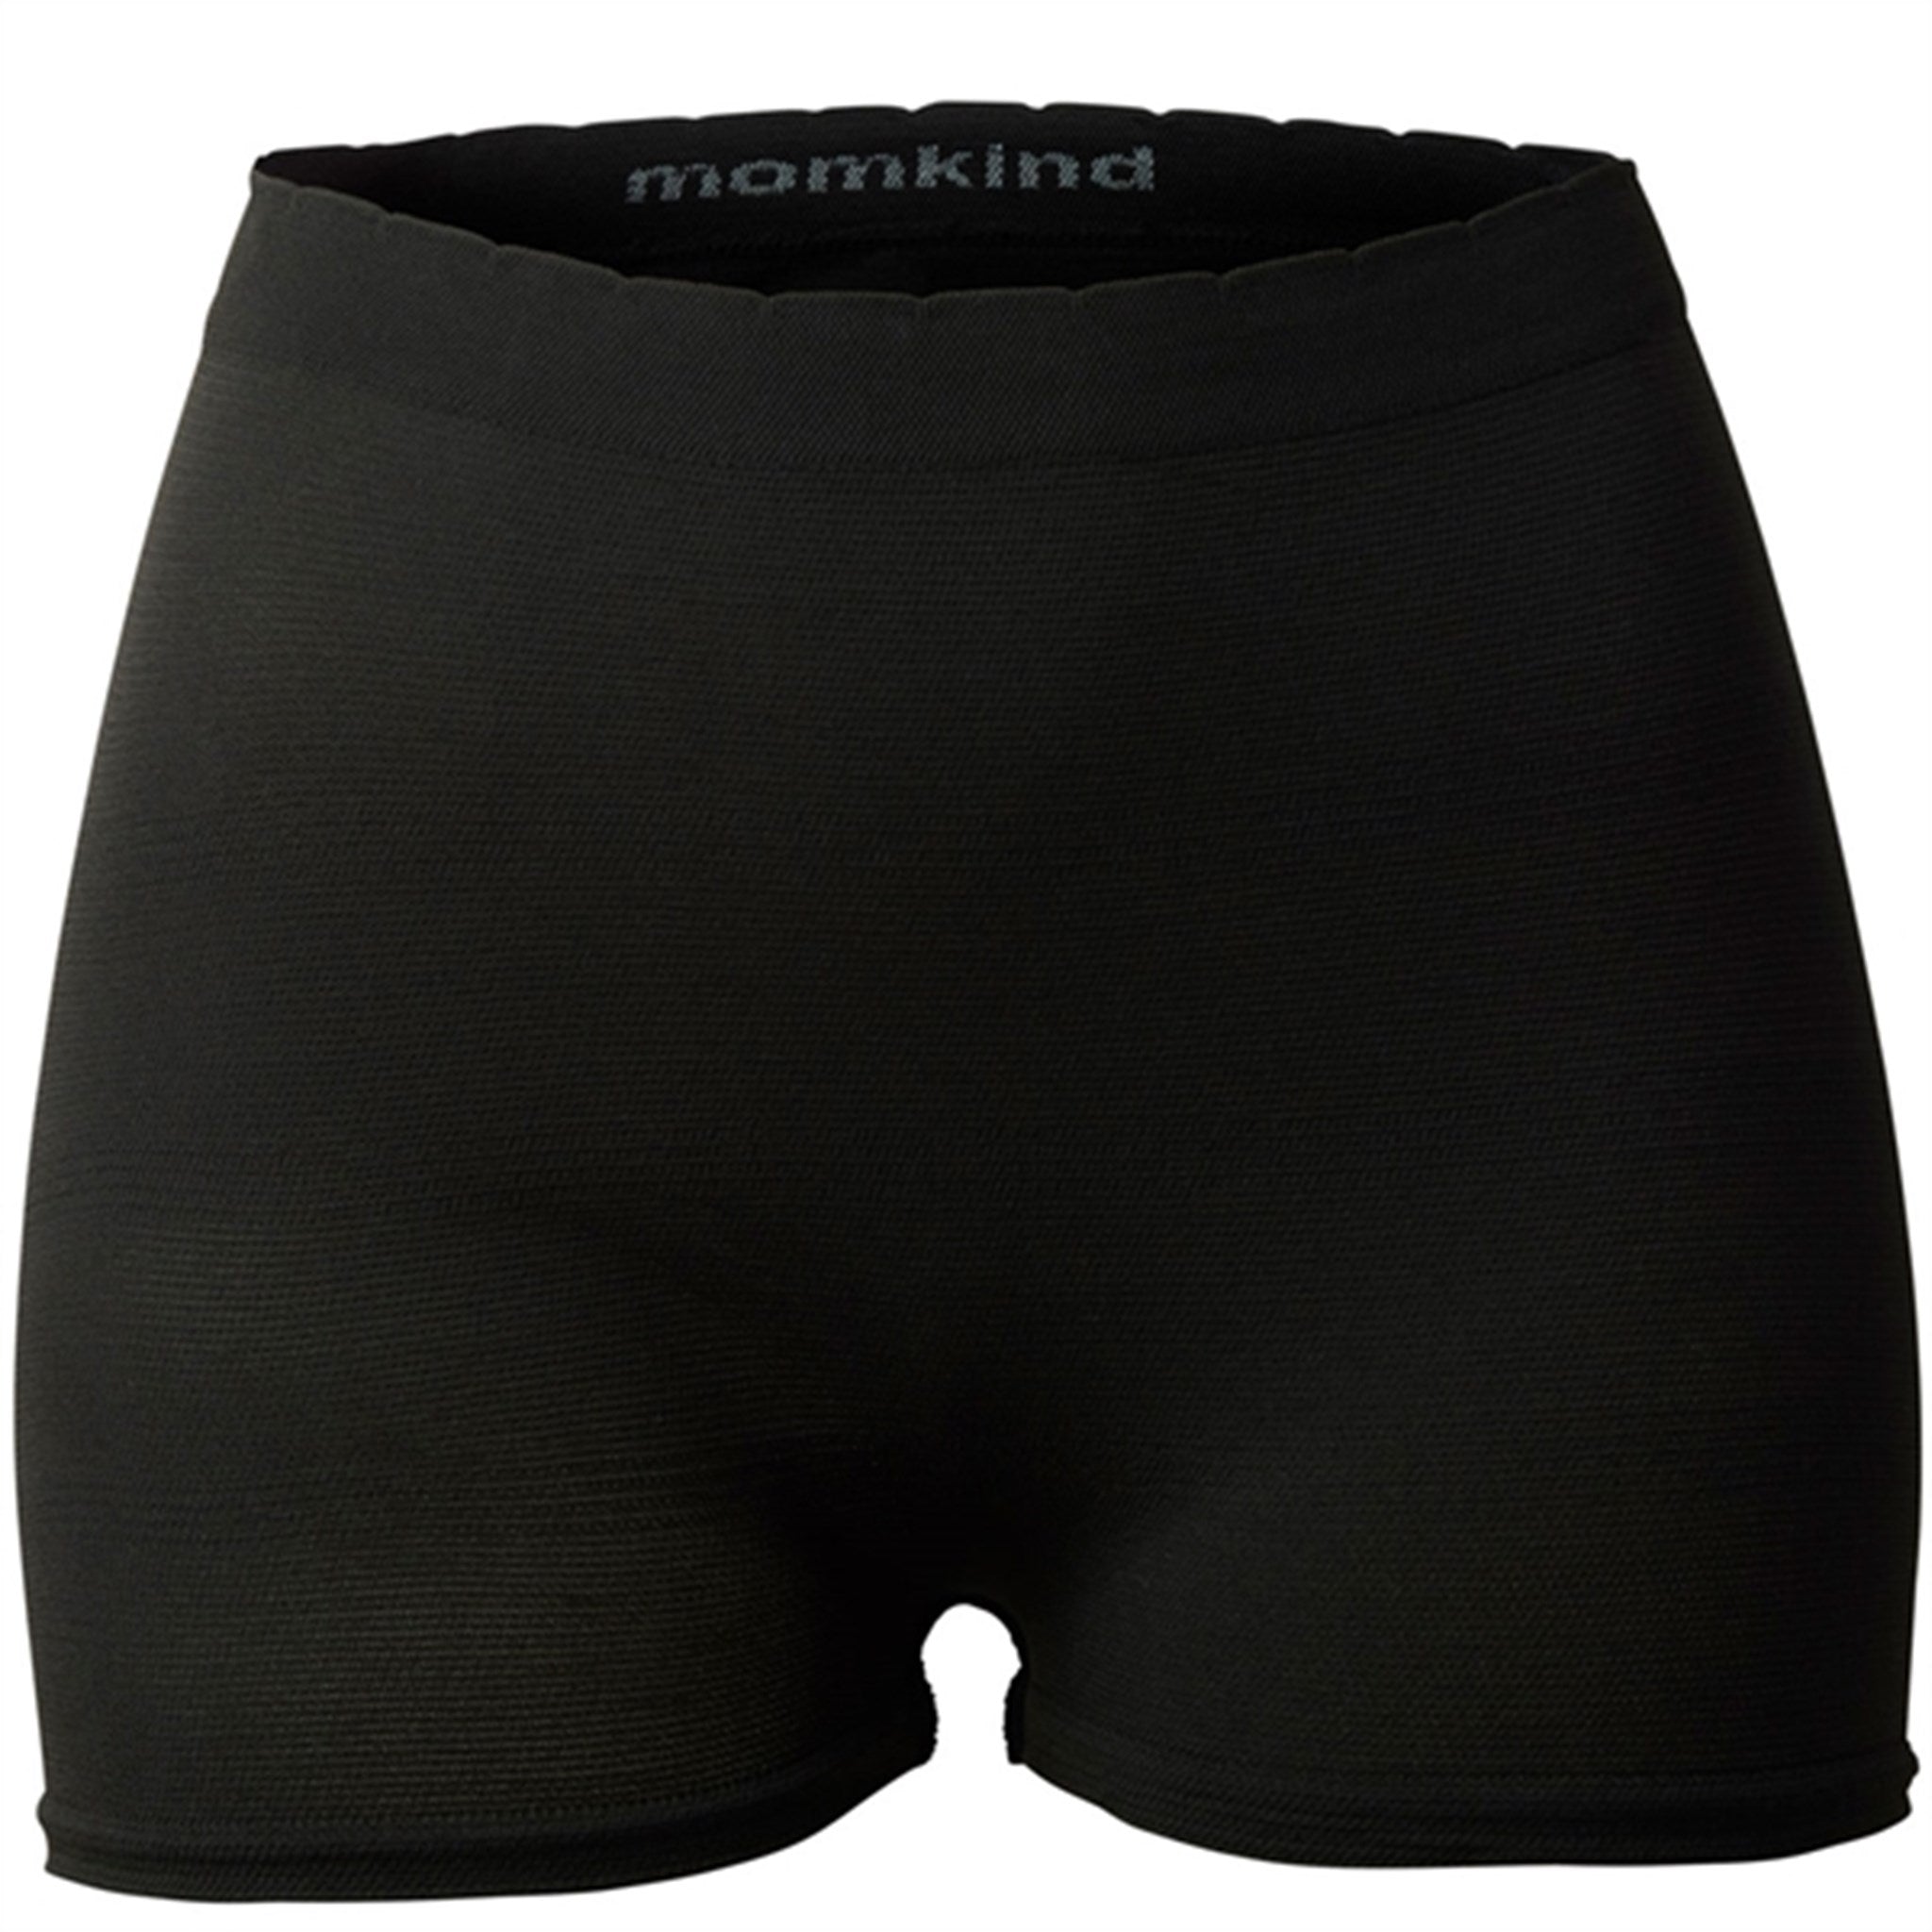 momkind Postpartum Panties 3-Pack Black